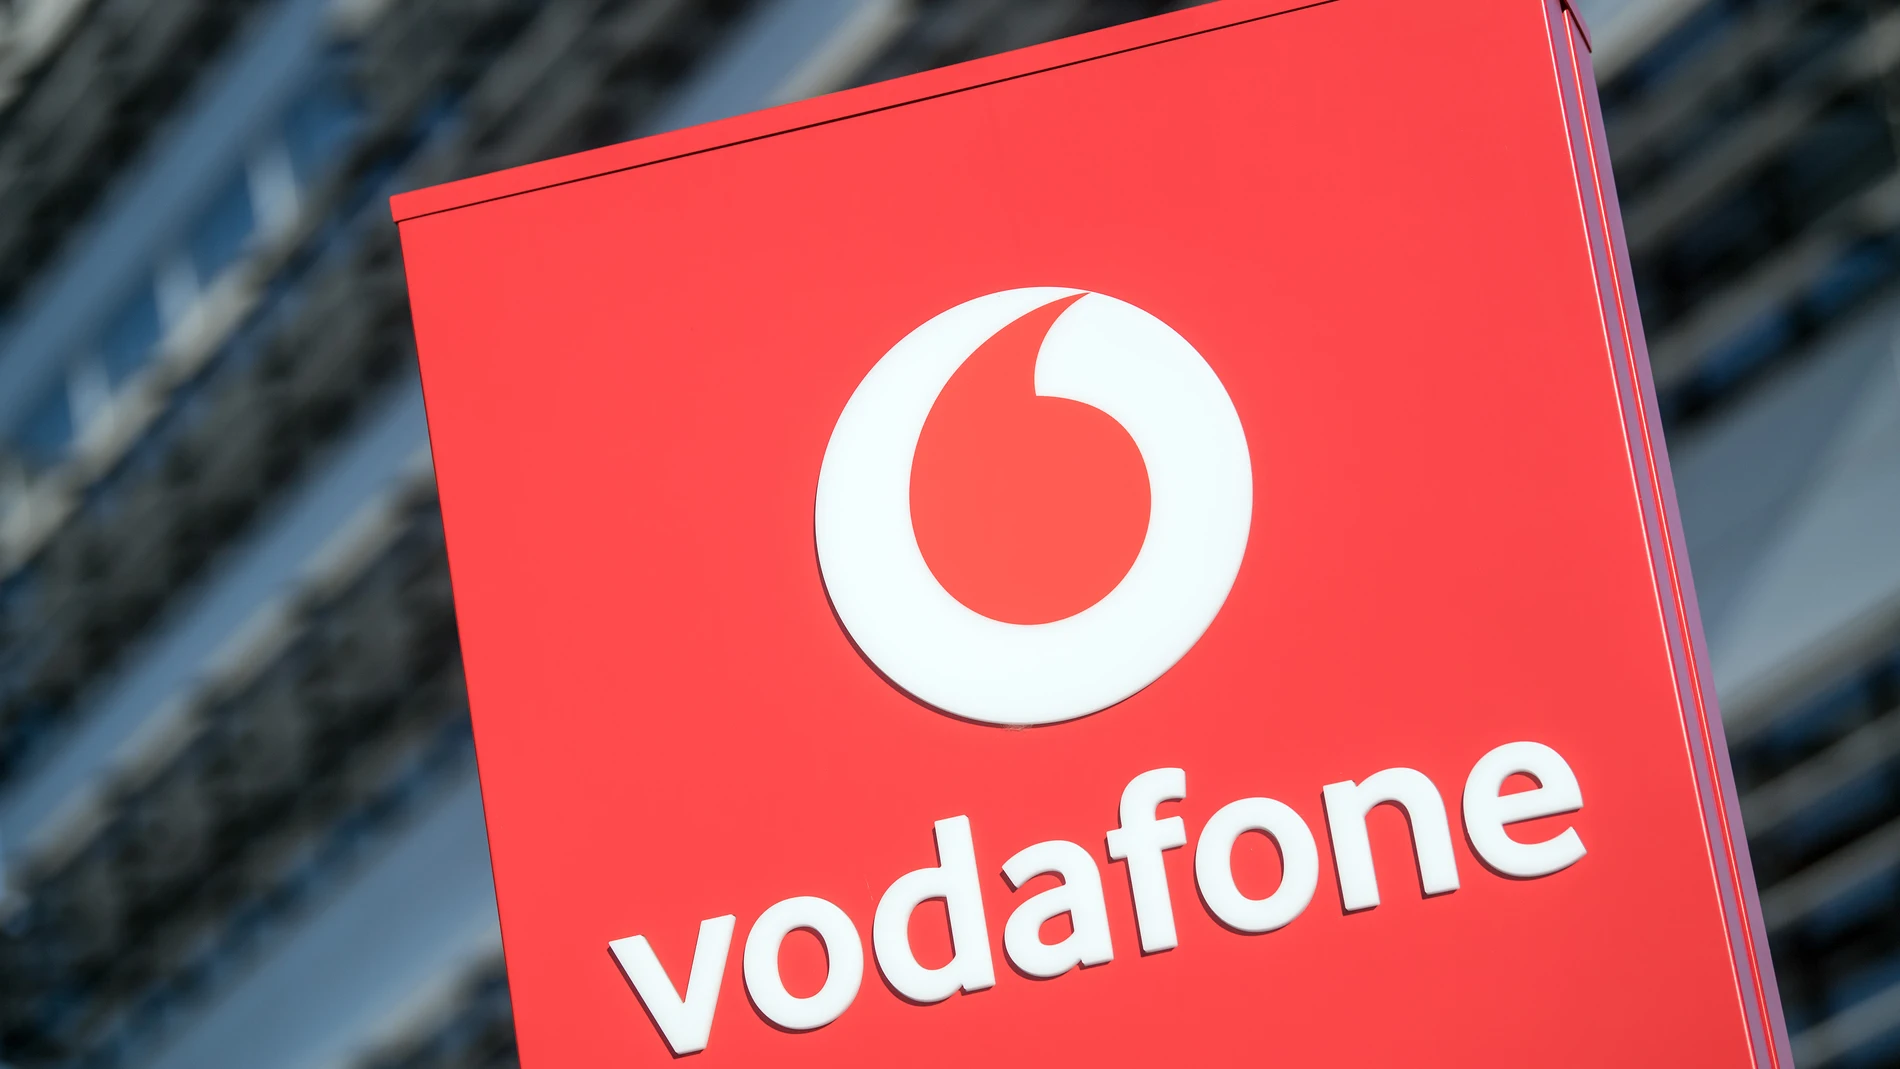 R.Unido.- Vodafone pierde 346 millones en su primer semestre fiscal